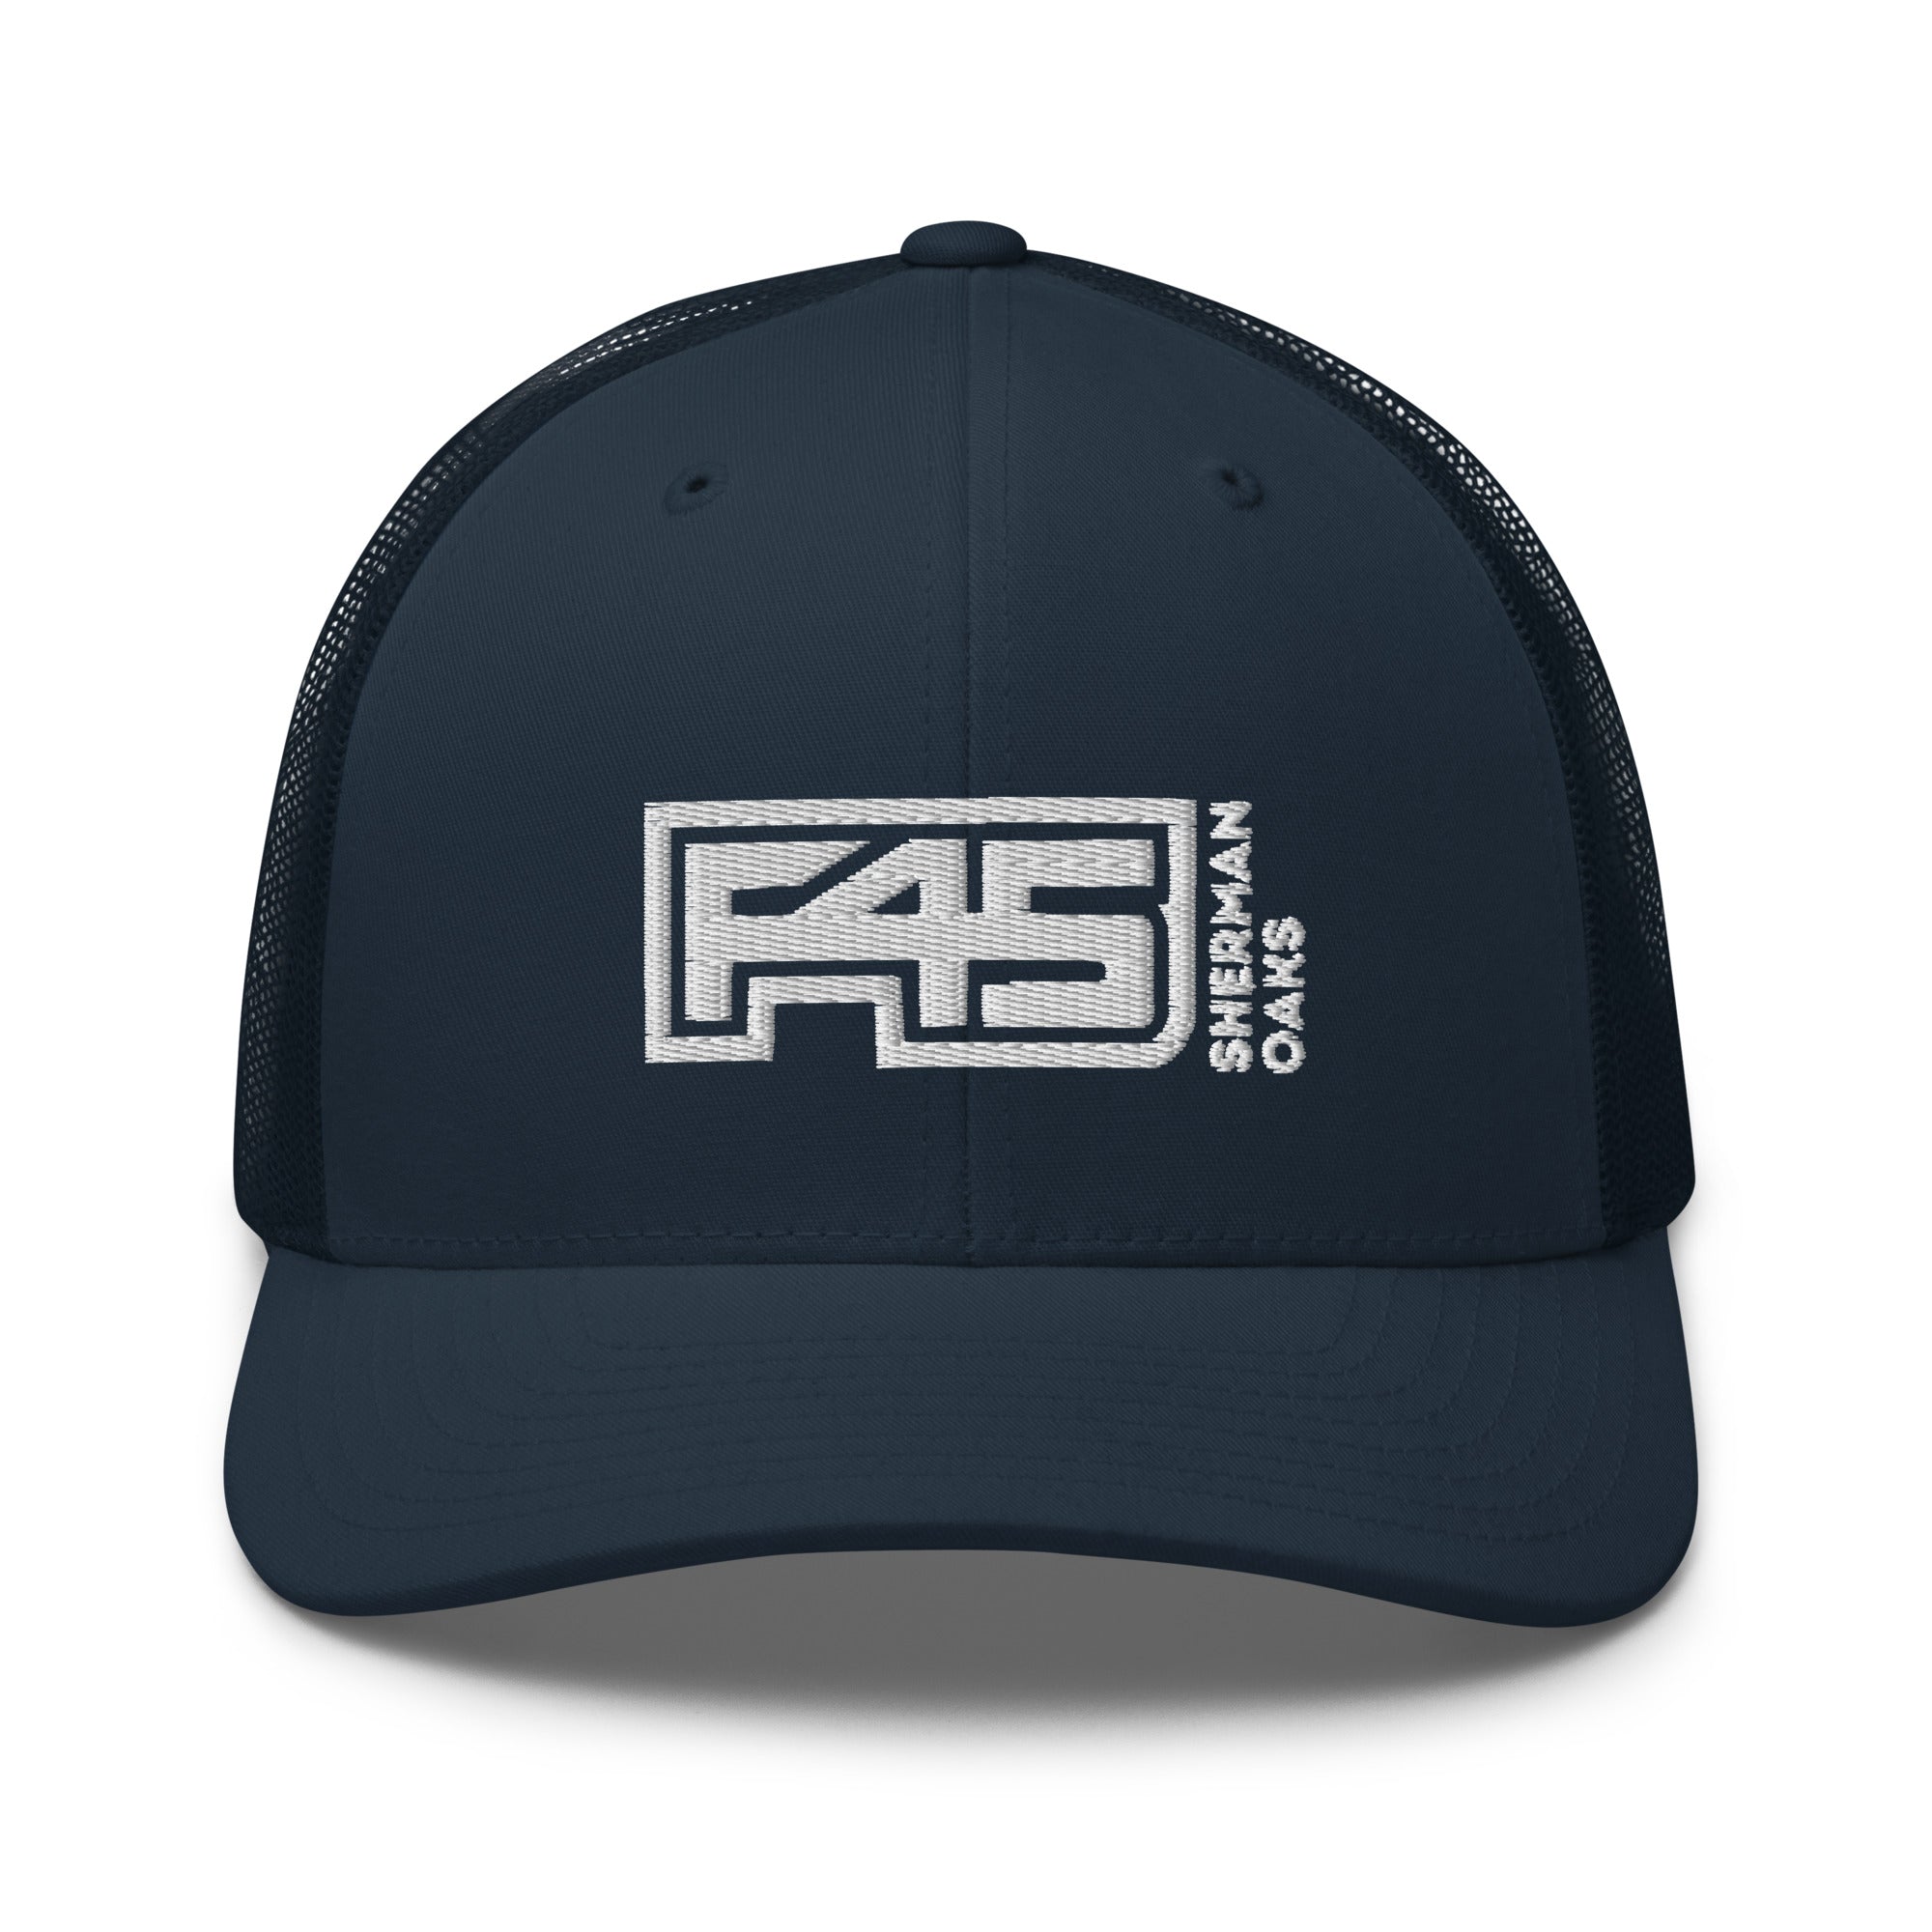 F45 Sherman Oaks Trucker Hat